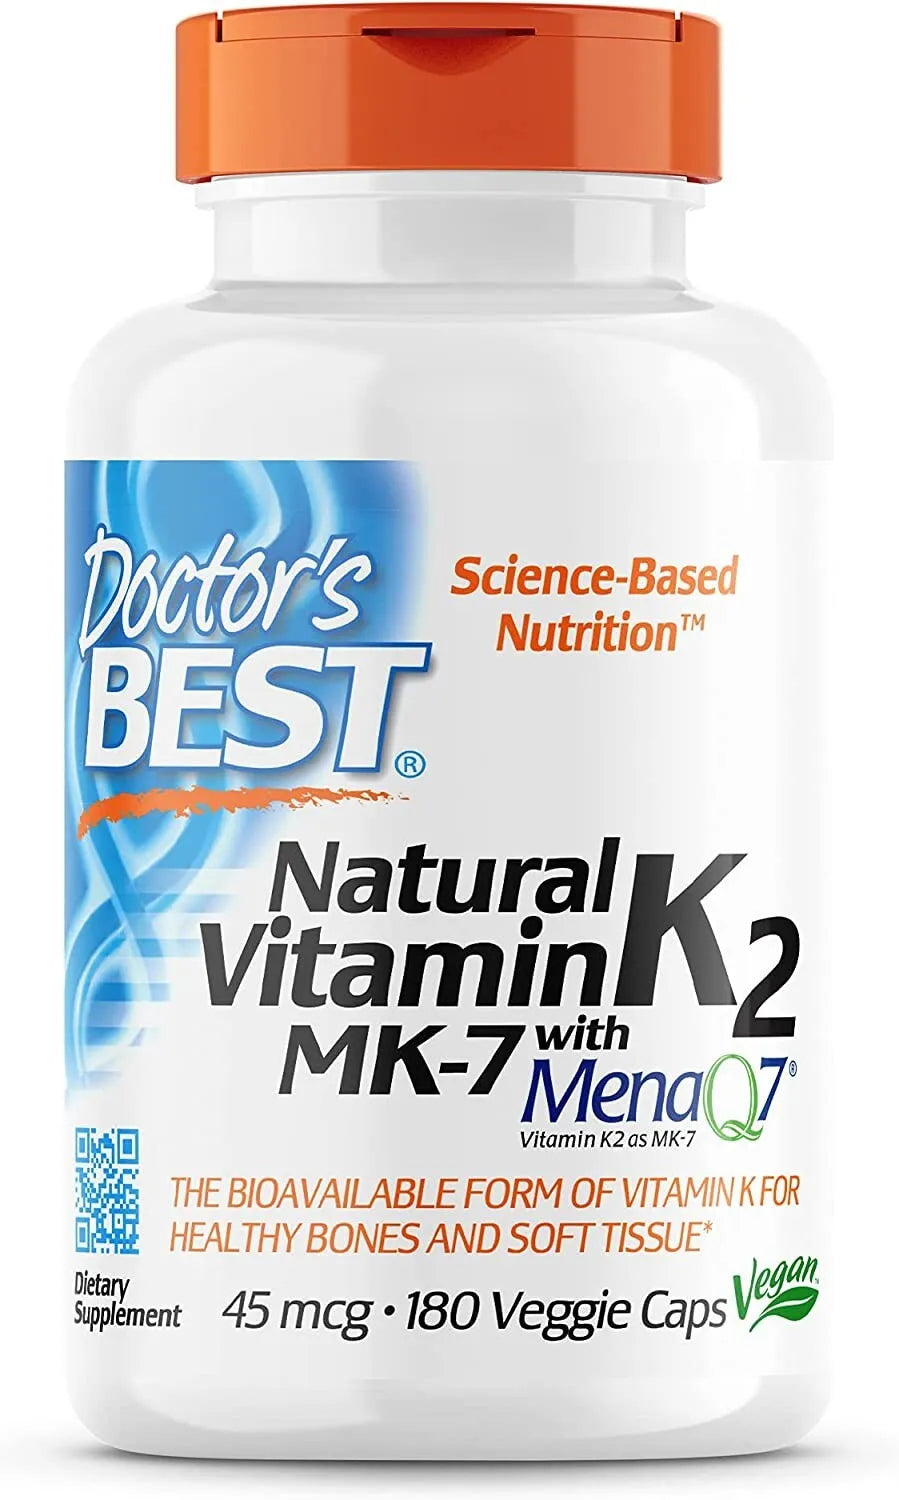 Vitamina K2 Mk-7, apoya la salud ósea y la elasticidad de los tejidos blandos